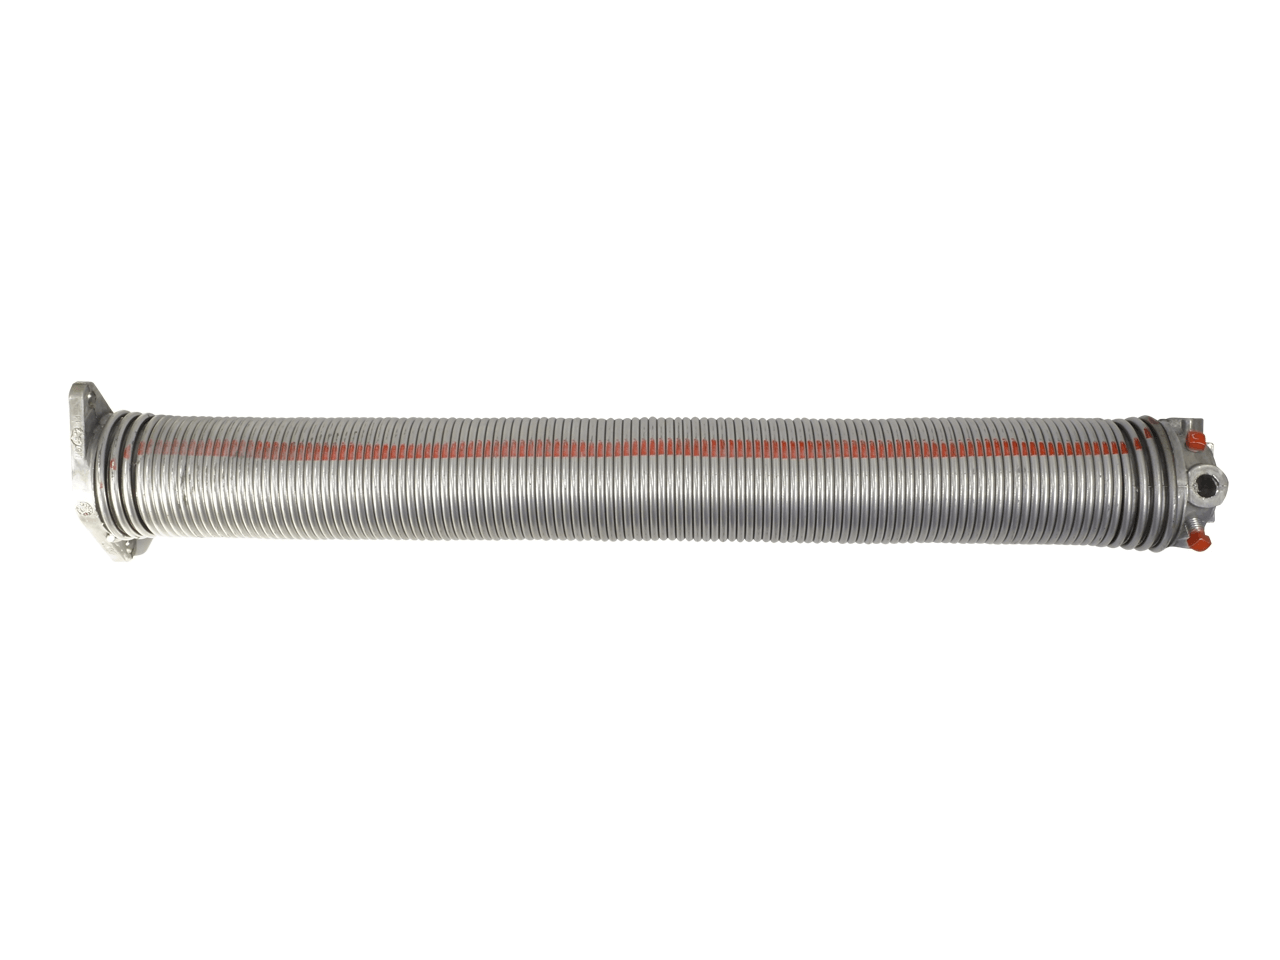 Torfeder, Innendurchmesser 152 mm, Drahtstärke 10,5 mm, Windung Links, mit Köpfen für Welle 31,75mm